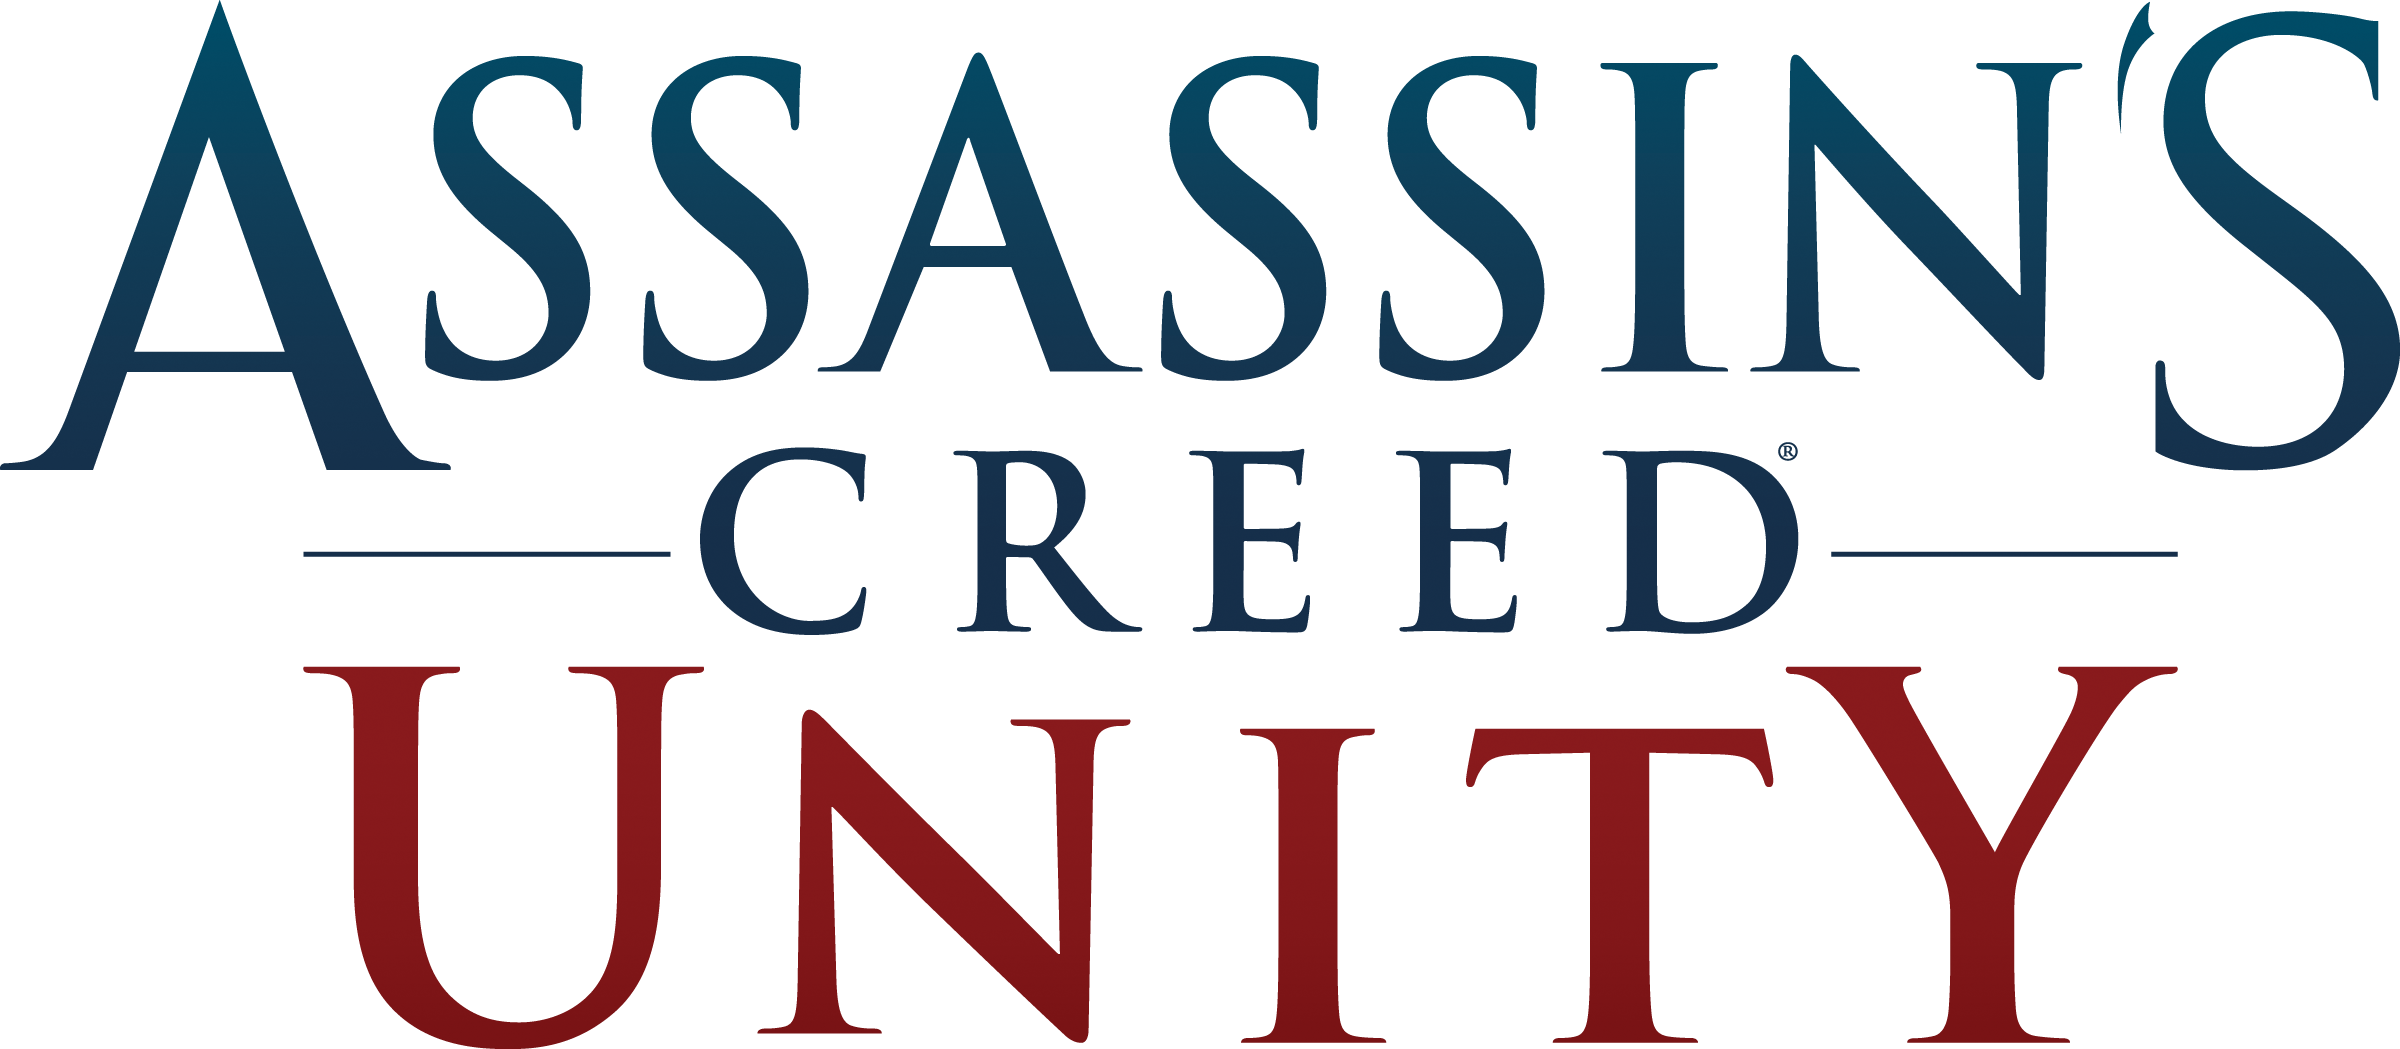 Detallamos El Contenido Exclusivo De Assassin's Creed - Assassin's Creed Unity Clipart (2400x1049), Png Download